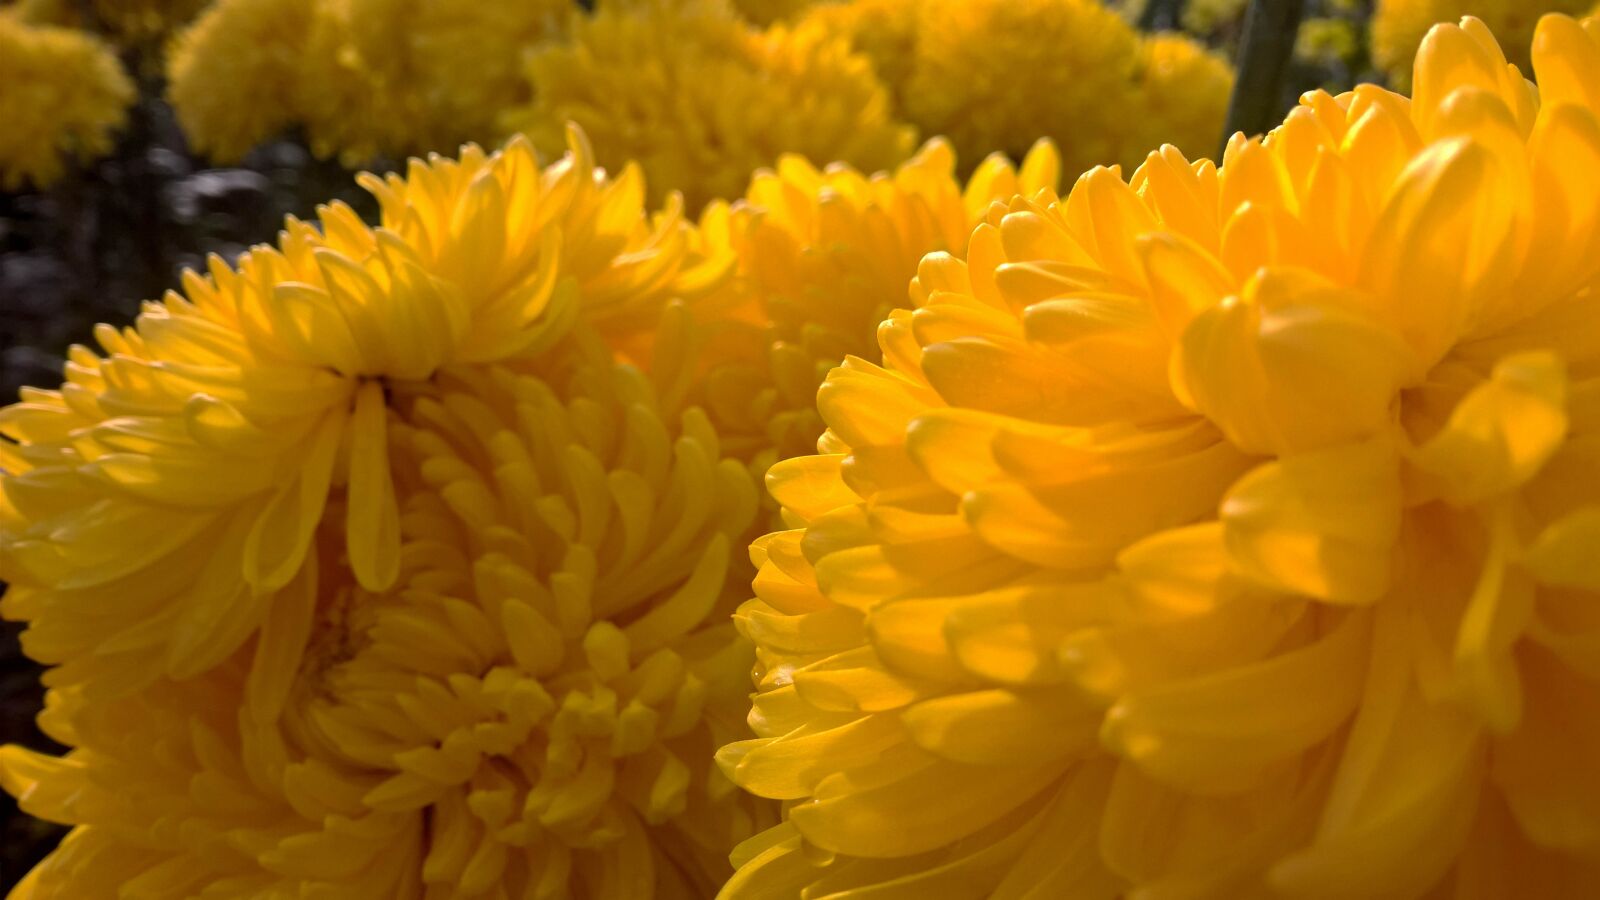 Nokia Lumia 1520 sample photo. Chrysanthemum, autumn, yellow photography